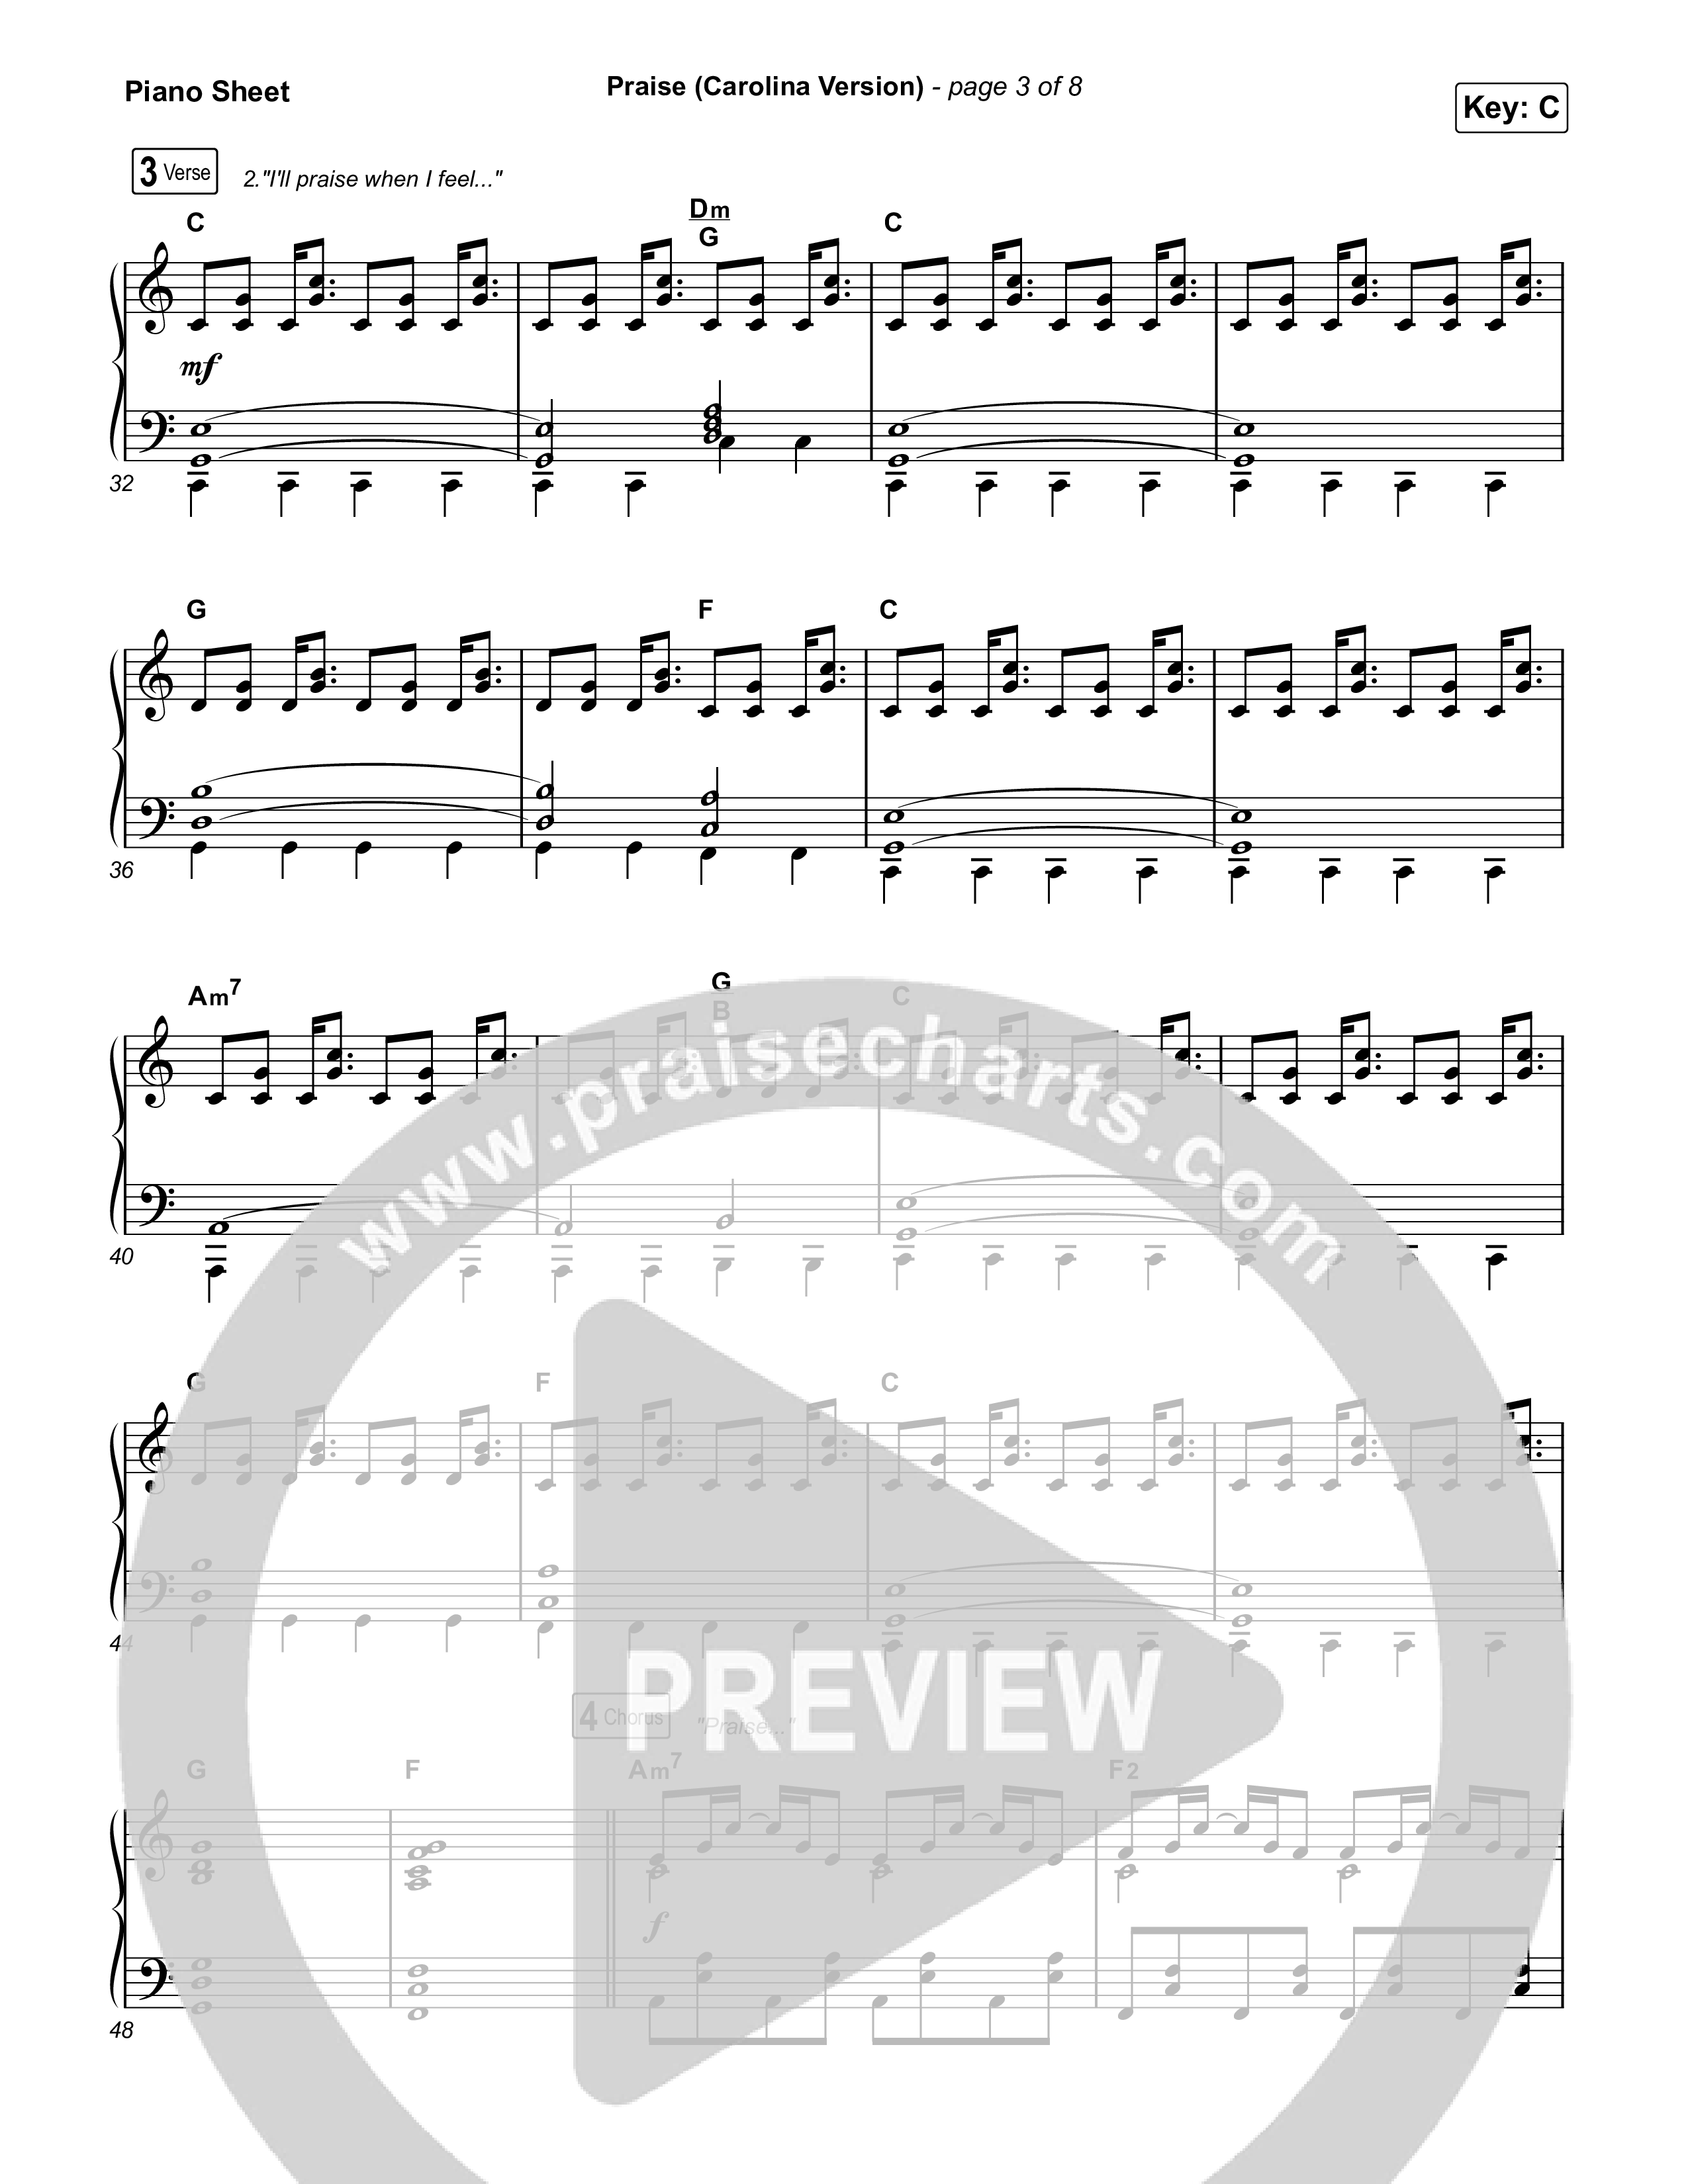 Praise (Carolina Version) Piano Sheet (Elevation Worship)